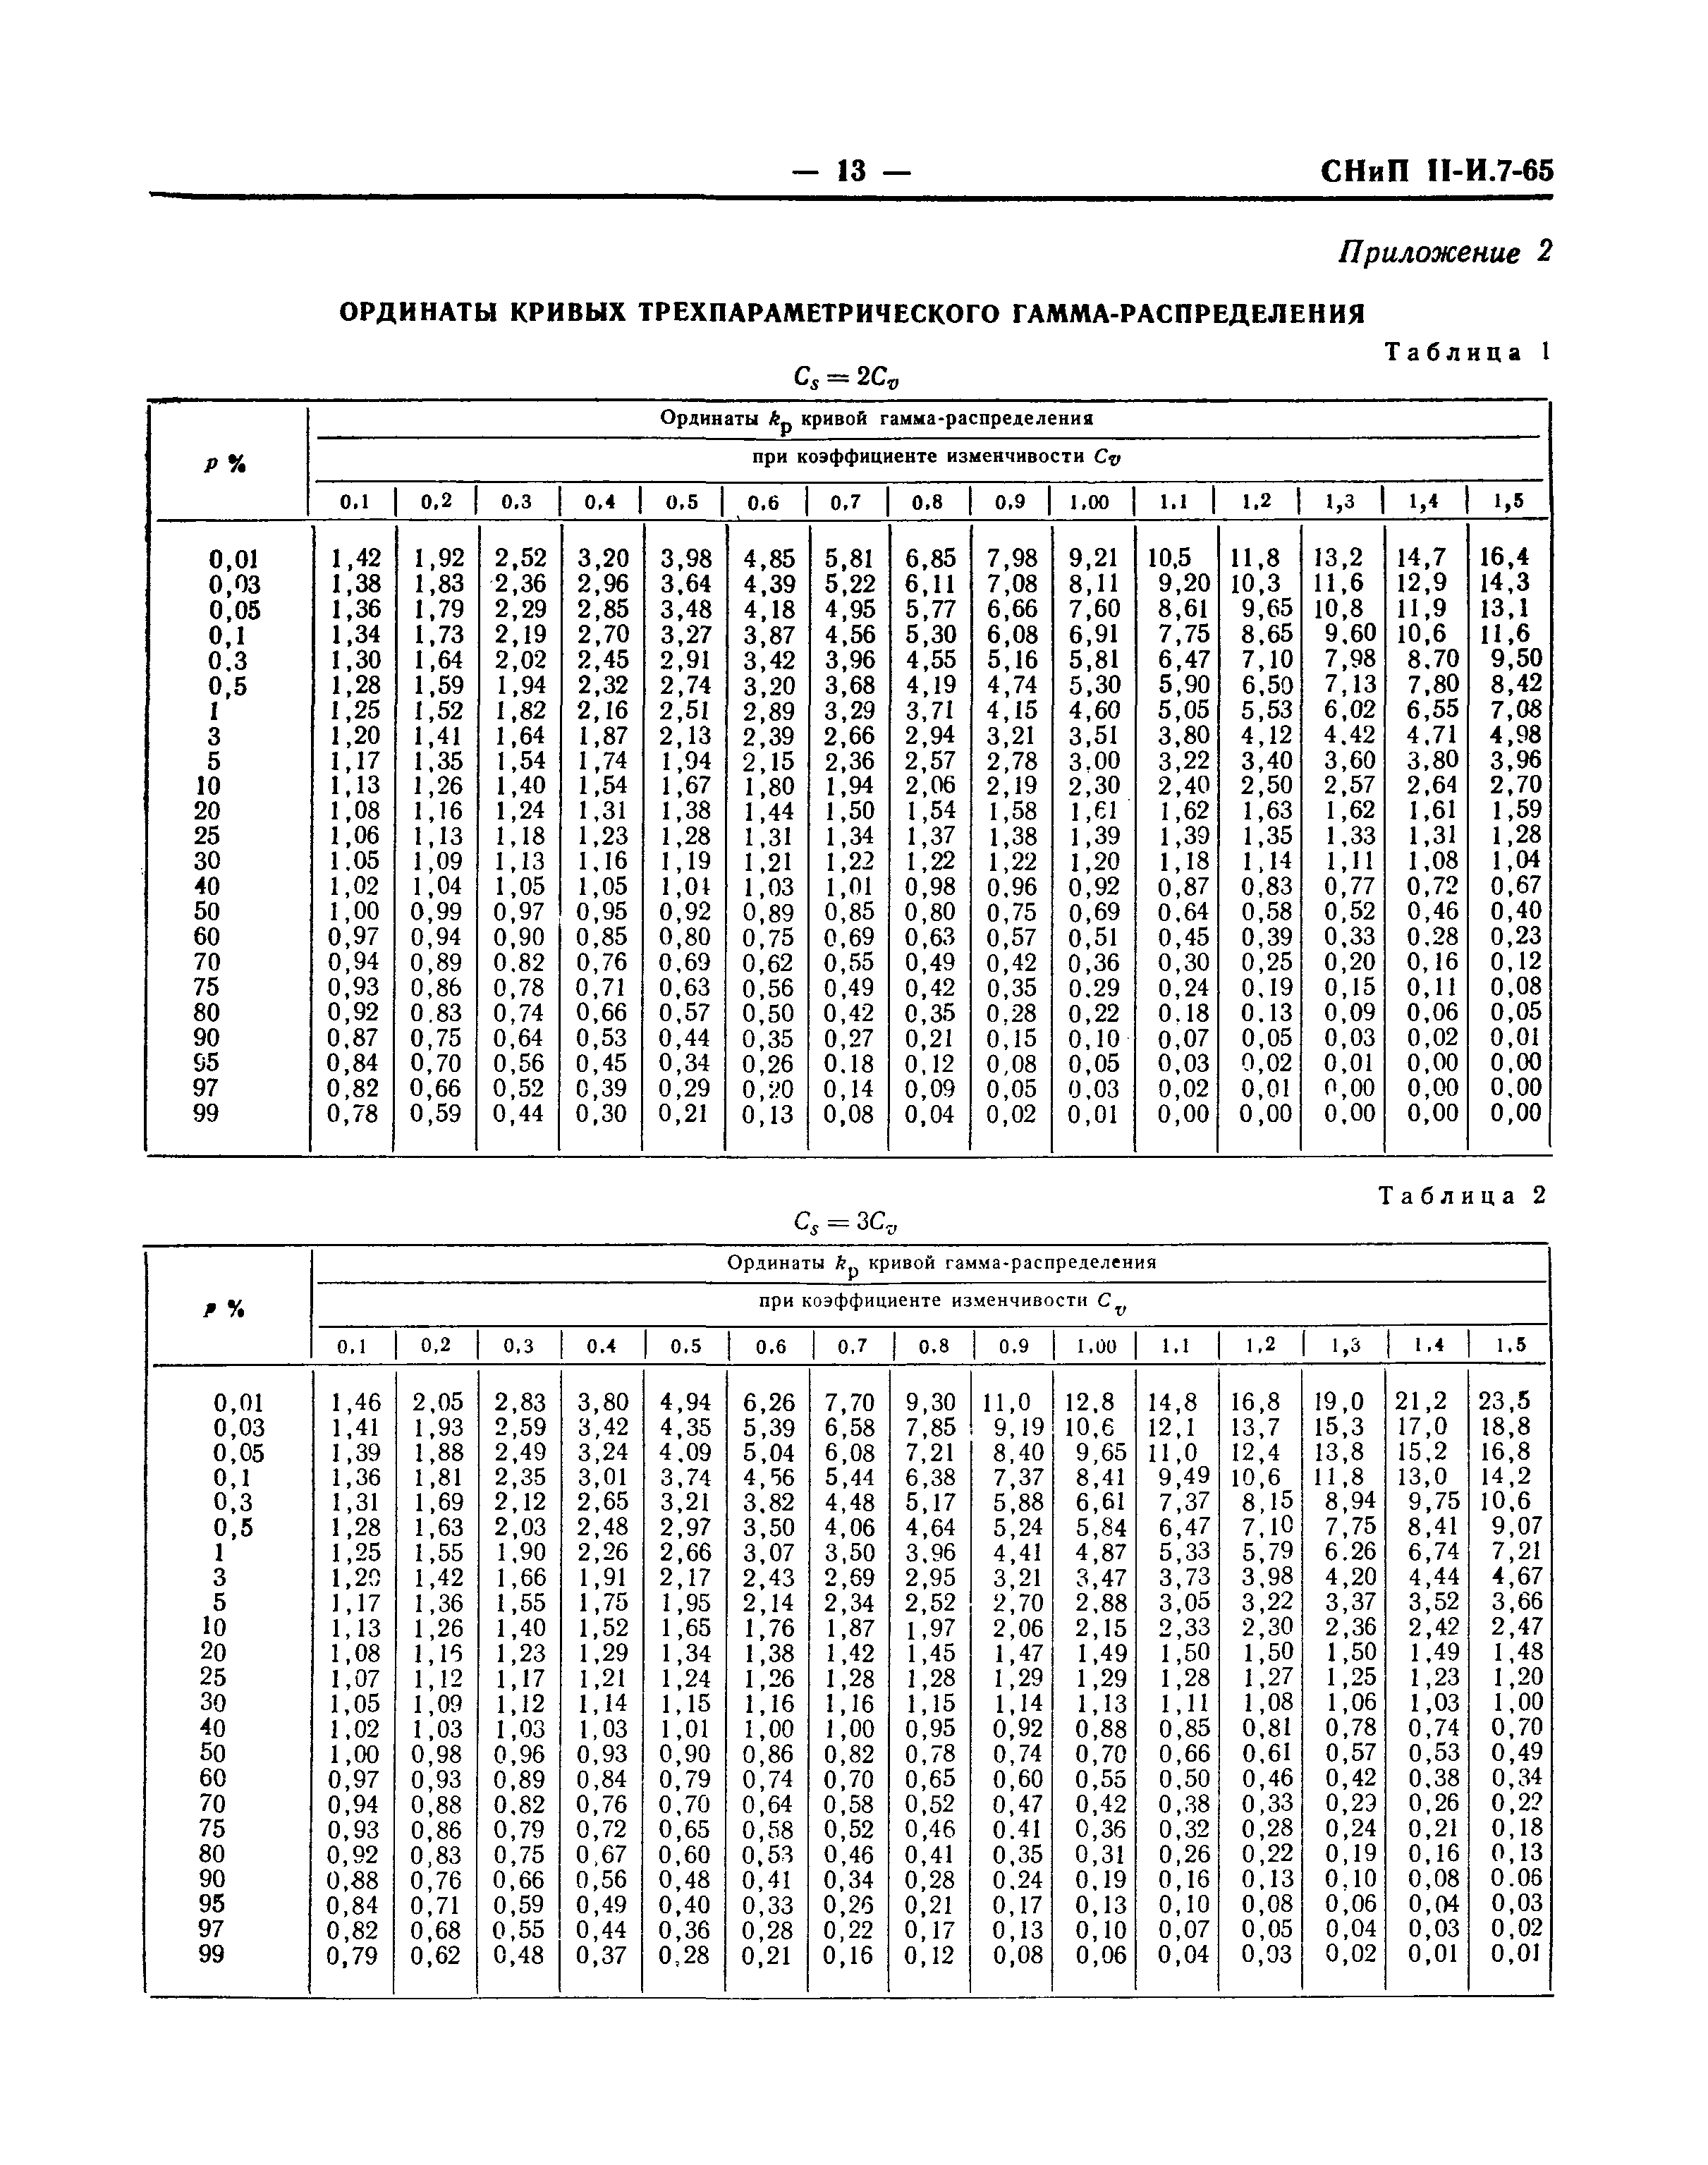 СНиП II-И.7-65